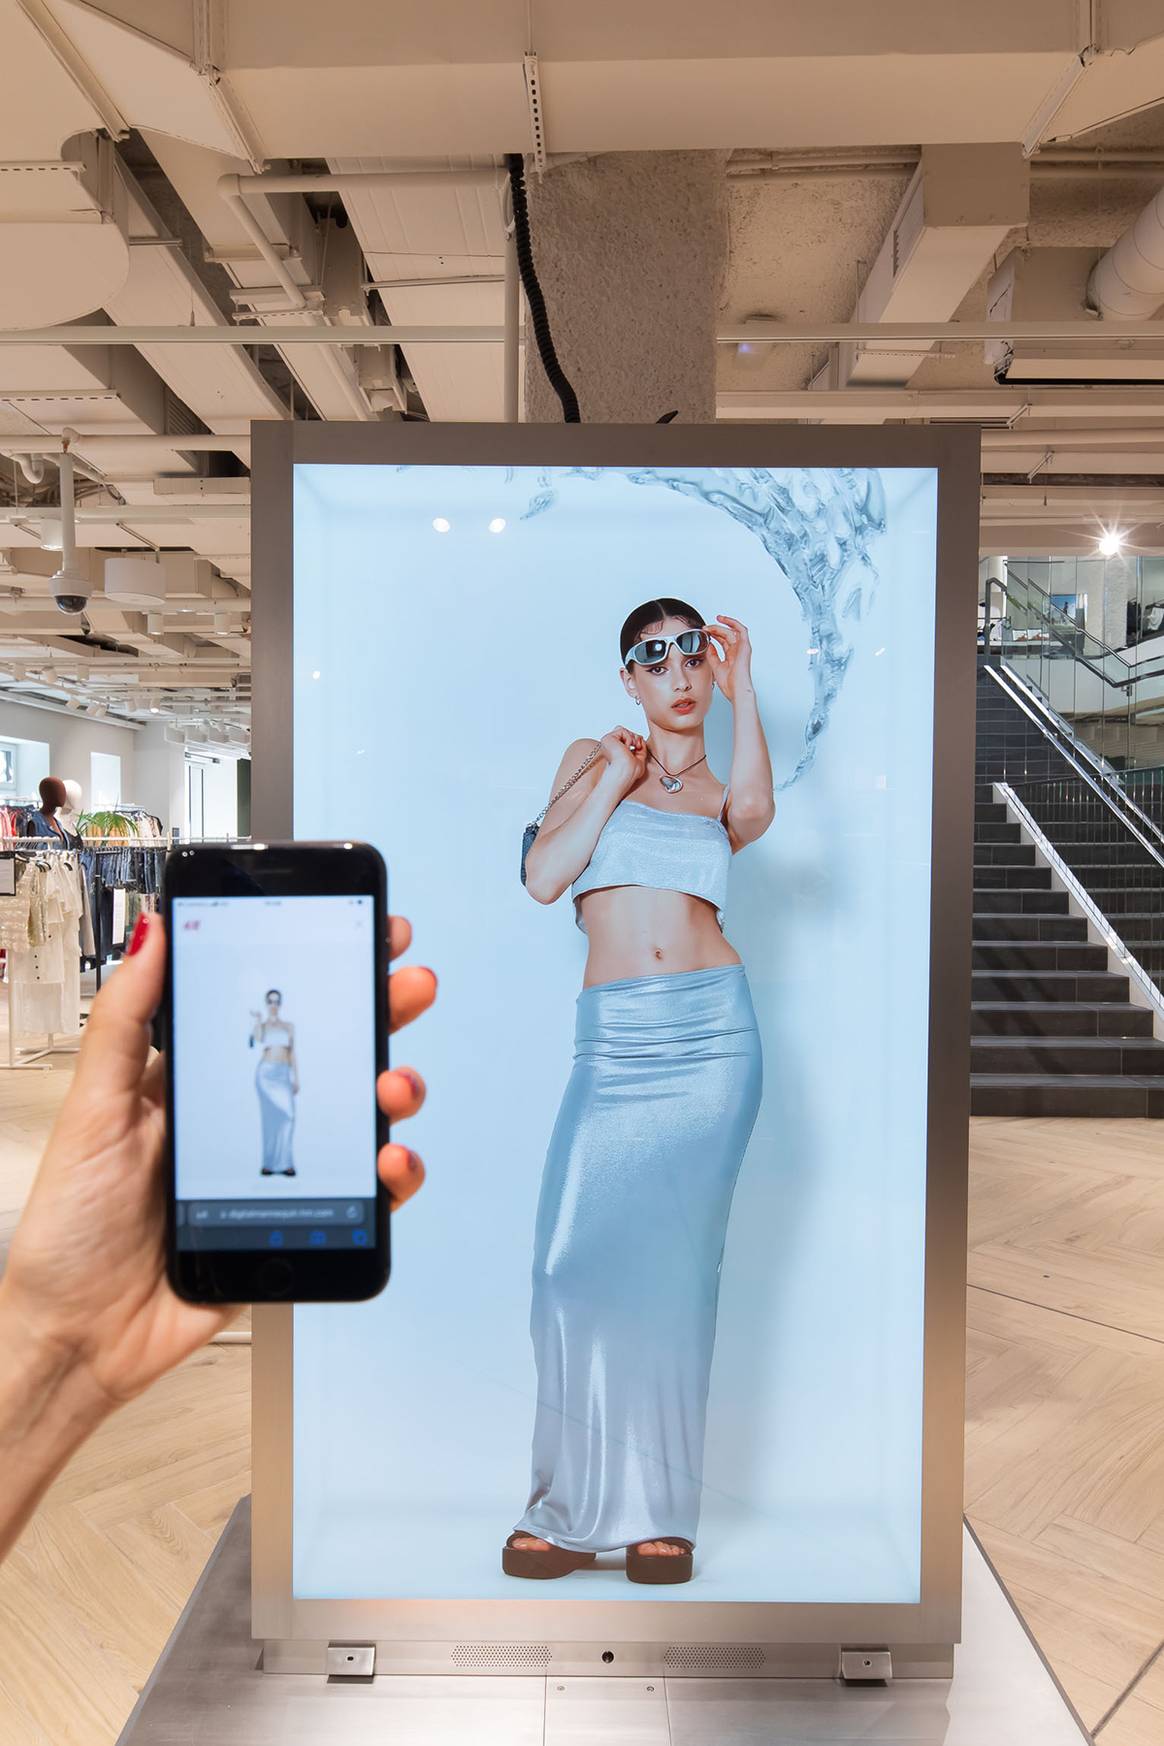 Photo Credits: “Maniquí virtual” interactivo de la renovada tienda de H&M en el Paseo de Gracia de Barcelona. Fotografía de cortesía.